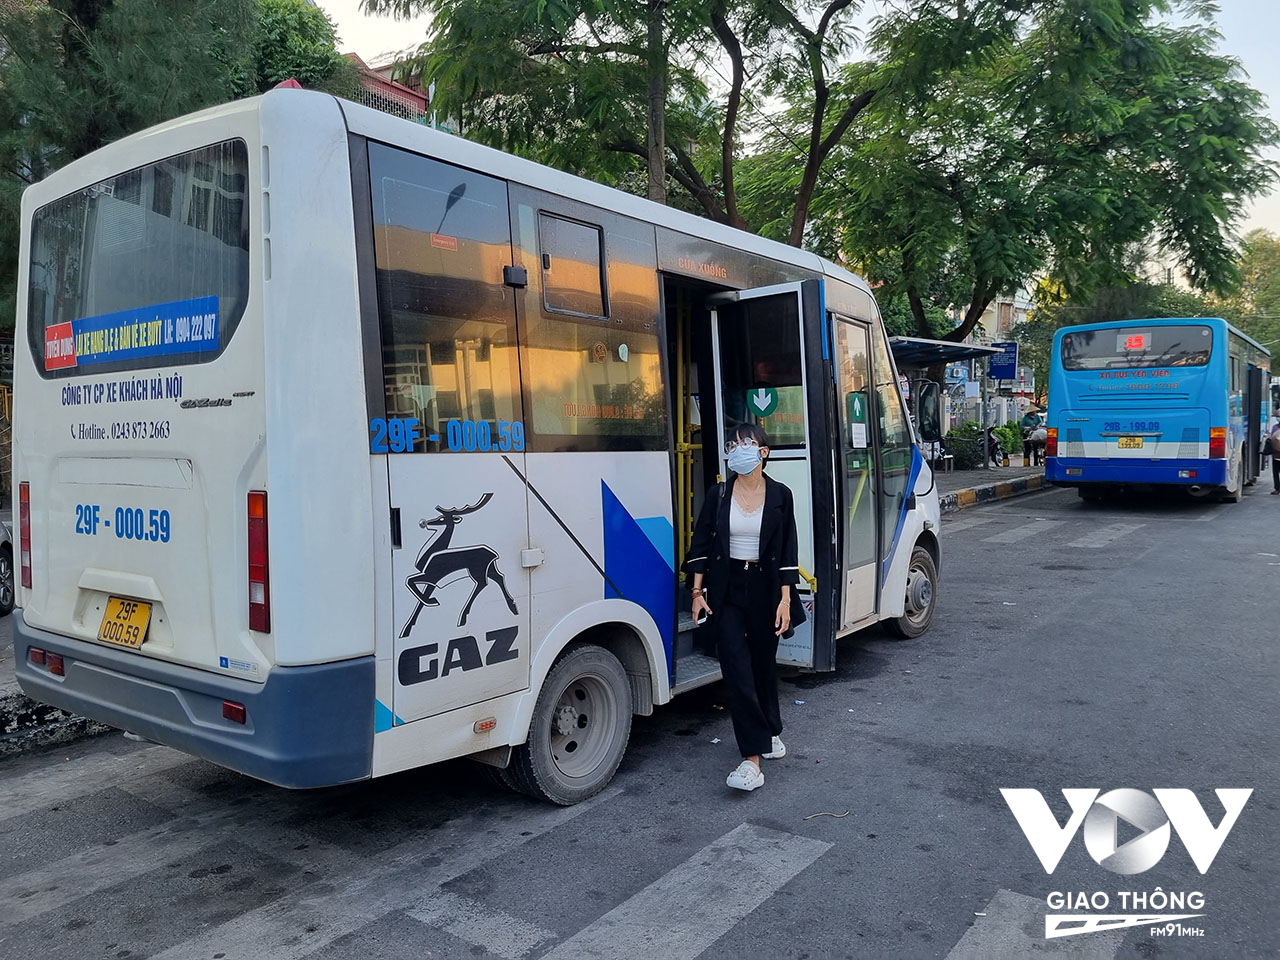 Hiện Hà Nội có 7 tuyết buýt mini với tổng cộng 73 phương tiện đang hoạt động. Lượng hành khách của buýt mini trong tháng 10 vừa qua tăng hơn 51.000 lượt so với tháng 9, tương đương 17%.